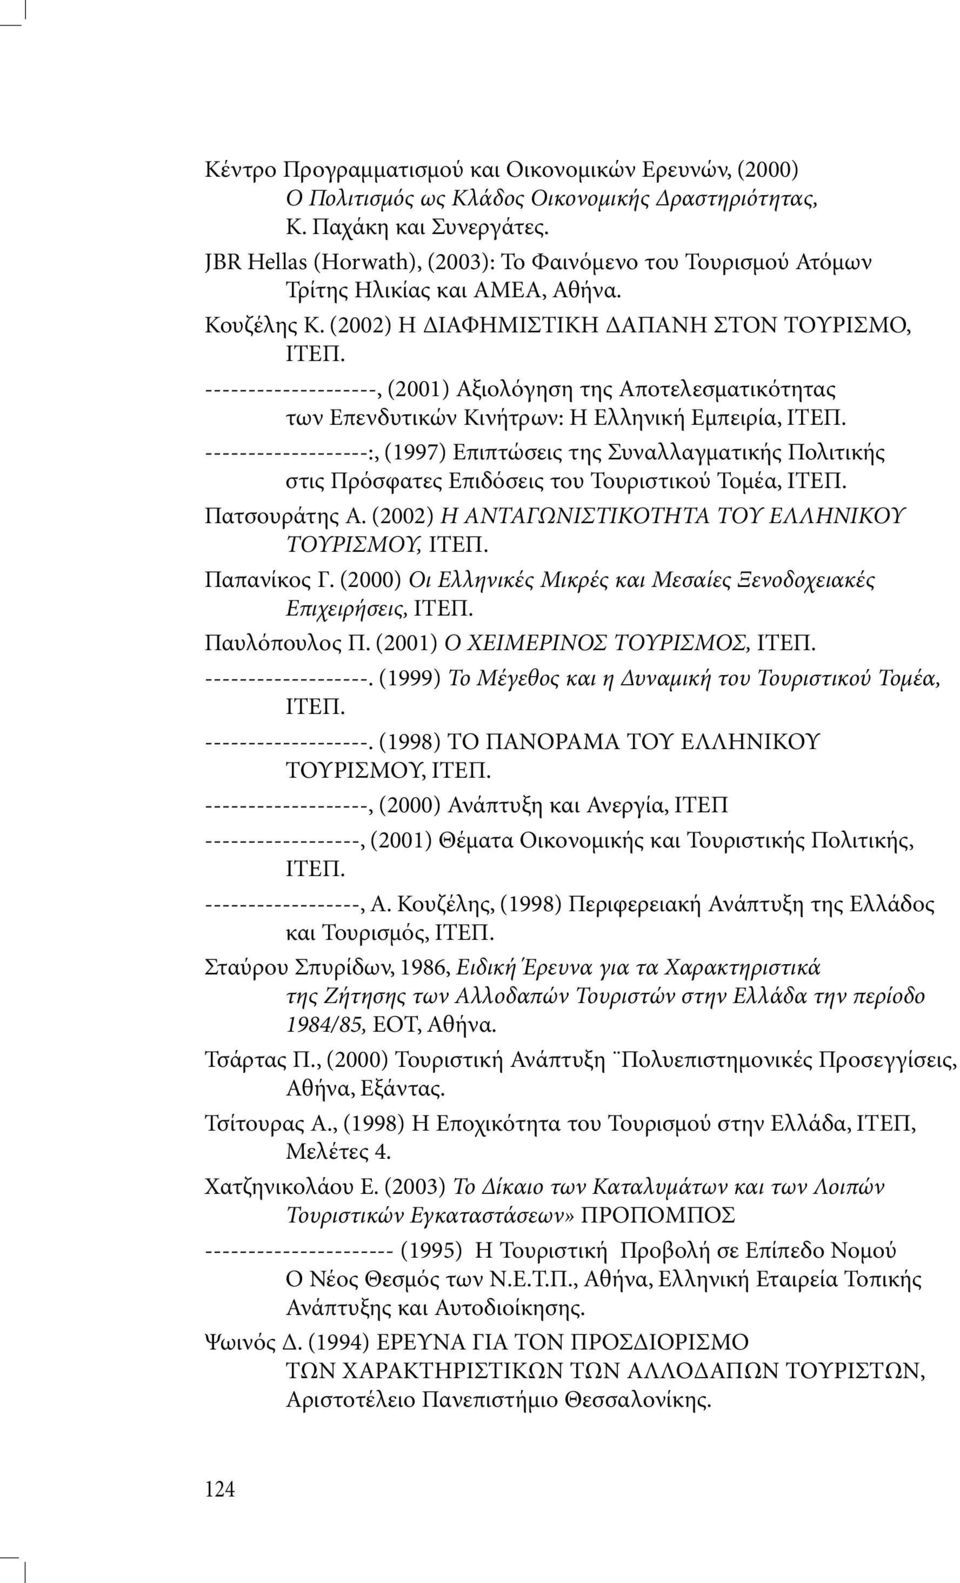 --------------------, (2001) Αξιολόγηση της Αποτελεσµατικότητας των Επενδυτικών Κινήτρων: Η Ελληνική Εµπειρία, ΙΤΕΠ.